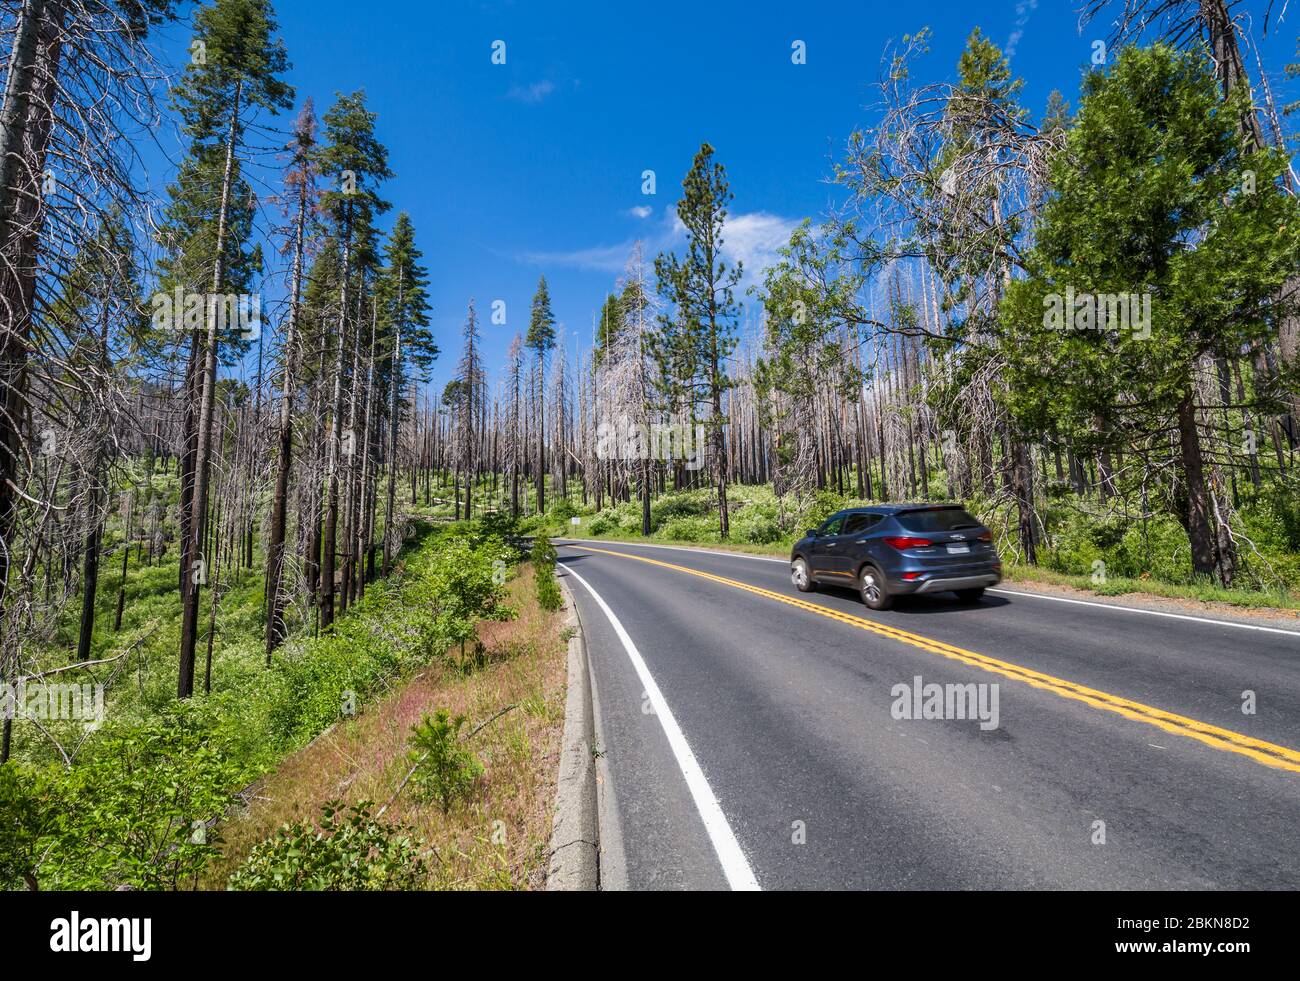 Route à travers la zone dévastée par les feux de forêt, parc national de Yosemite, site classé au patrimoine mondial de l'UNESCO, Californie, États-Unis, Amérique du Nord Banque D'Images